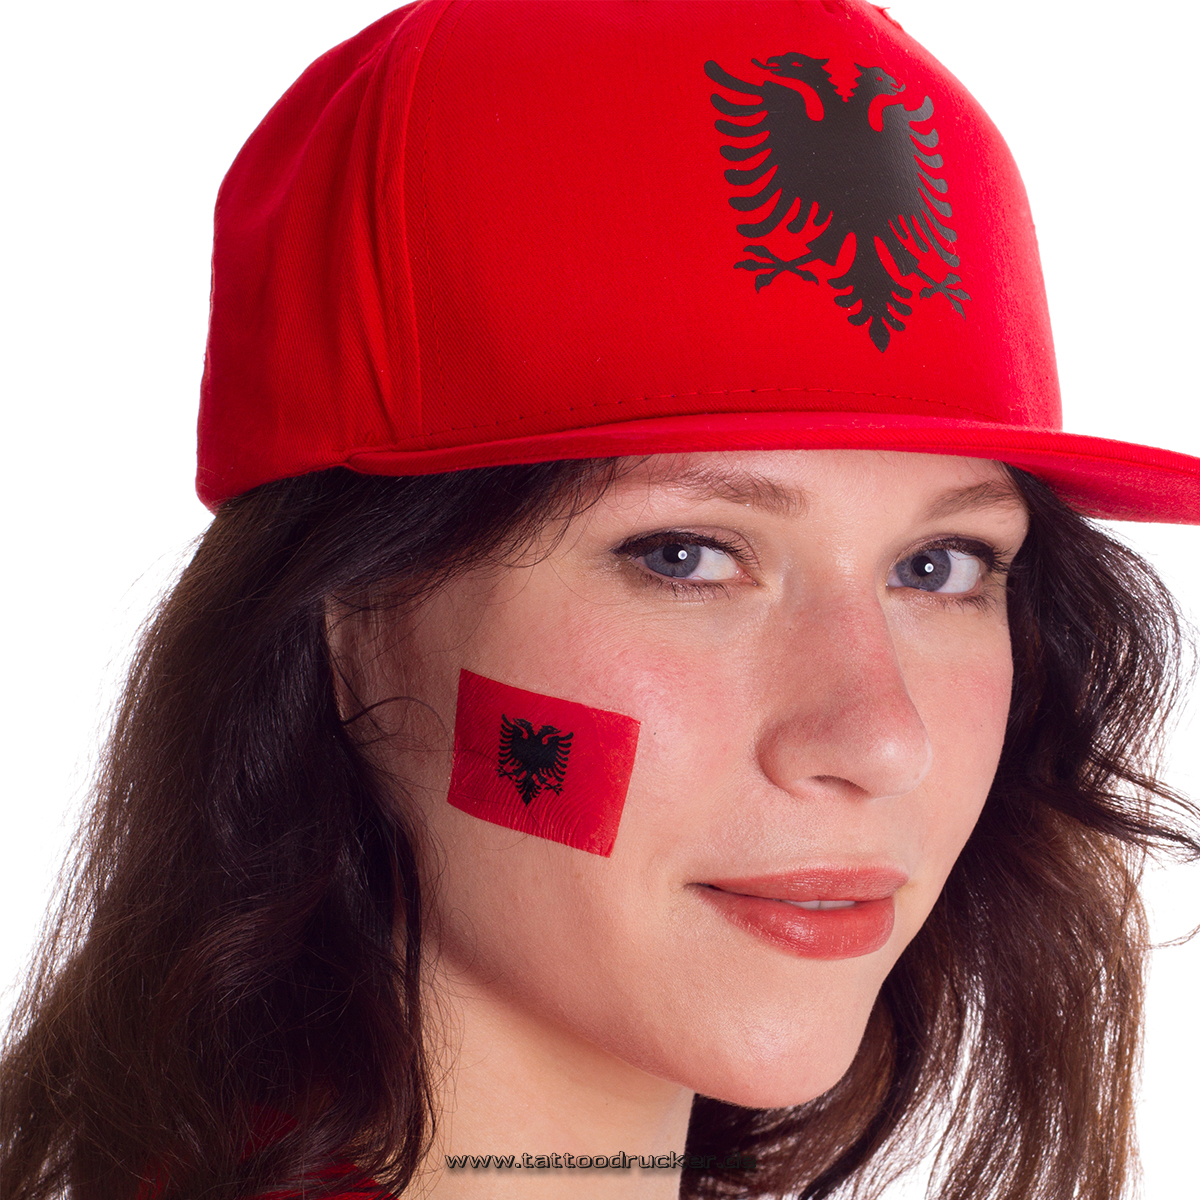 Albania fan tattoo 5pcs pack